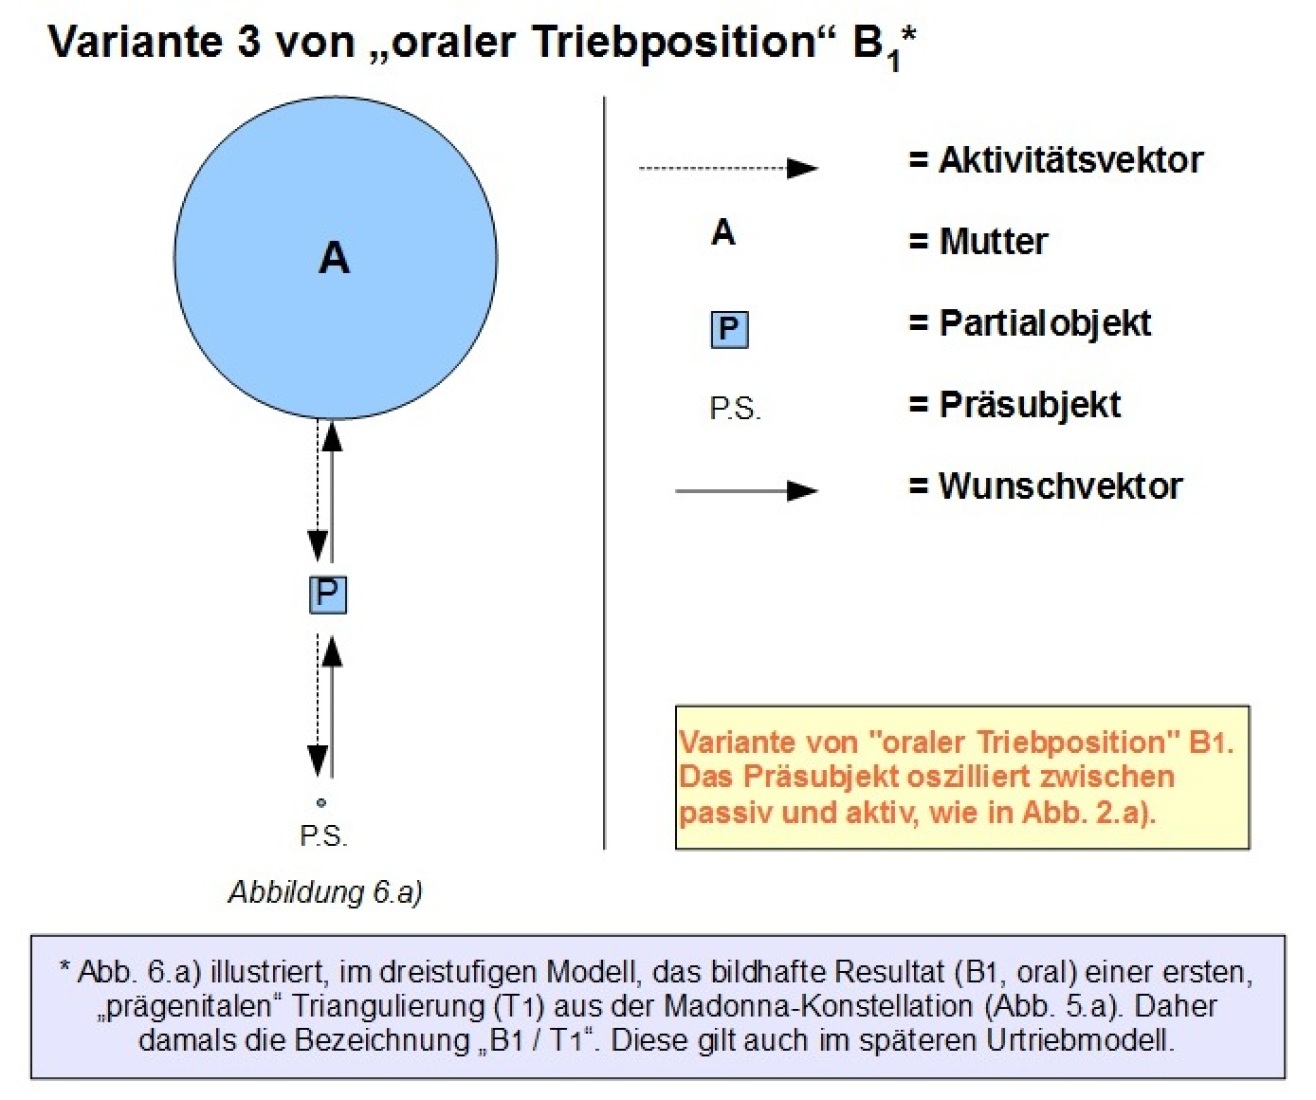 6a) B1 Orale Triebposition Variante 3 - Triangulierung aus Madonna-Konstellation.jpg